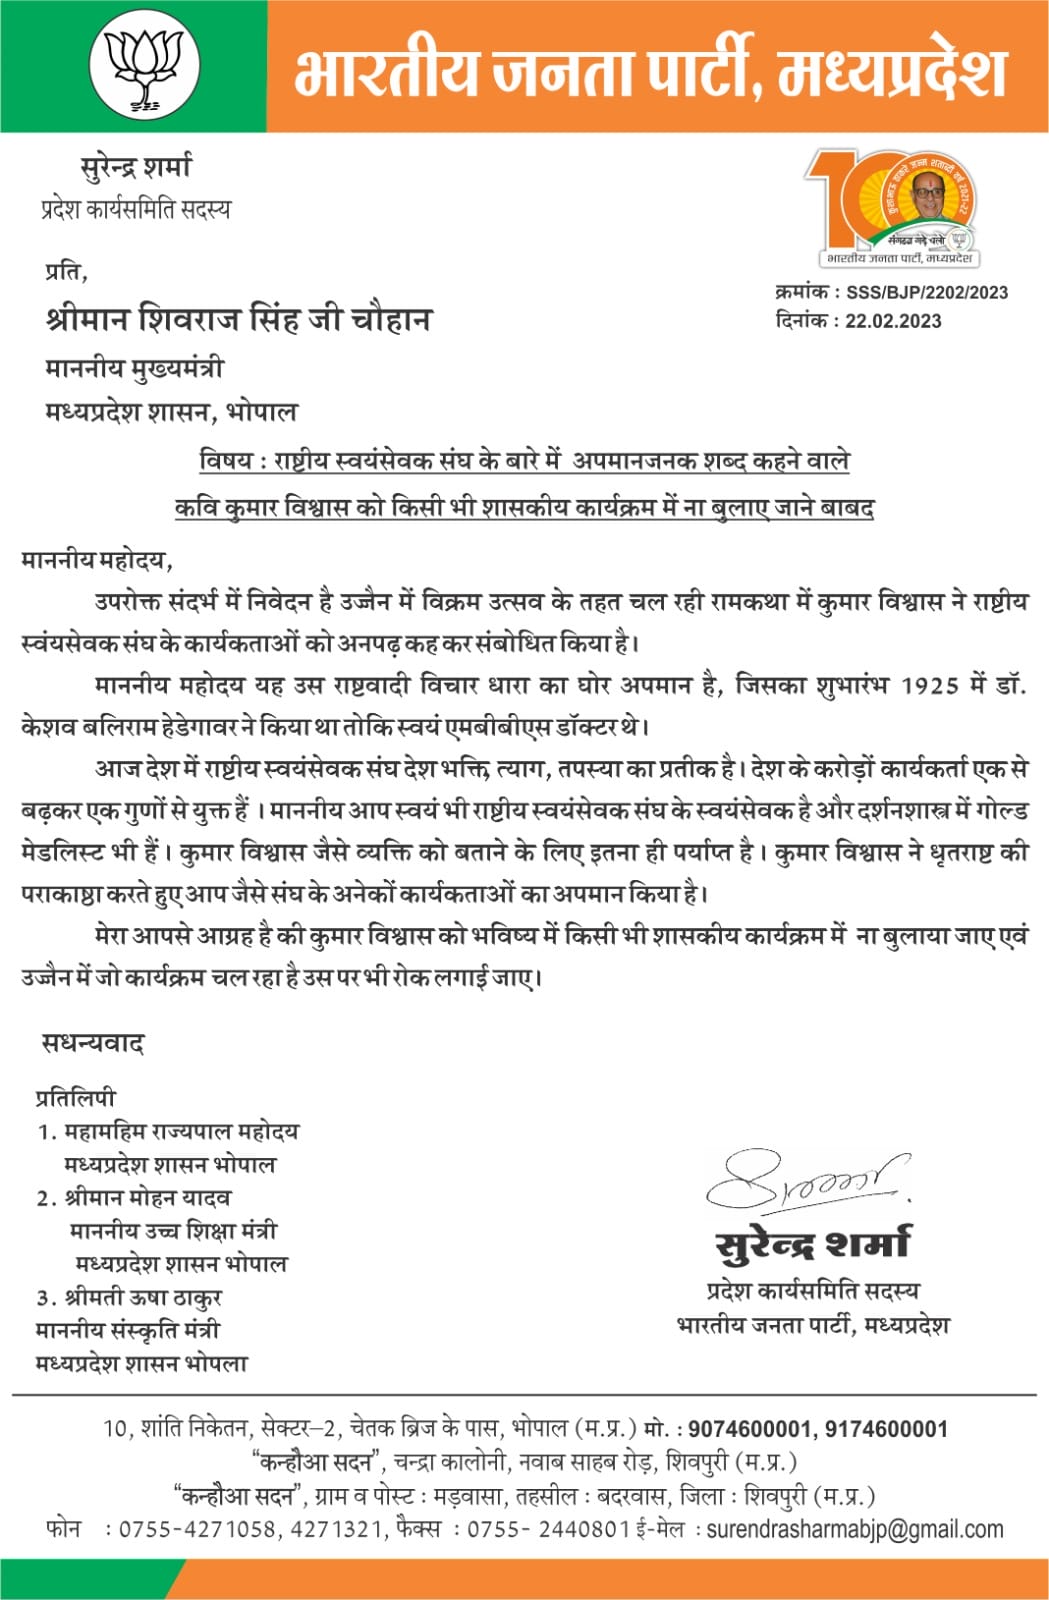 MP News : कुमार विश्वास पर मध्यप्रदेश में प्रतिबंध लगाने की मांग को लेकर भाजपा नेता ने मुख्यमंत्री को लिखा पत्र